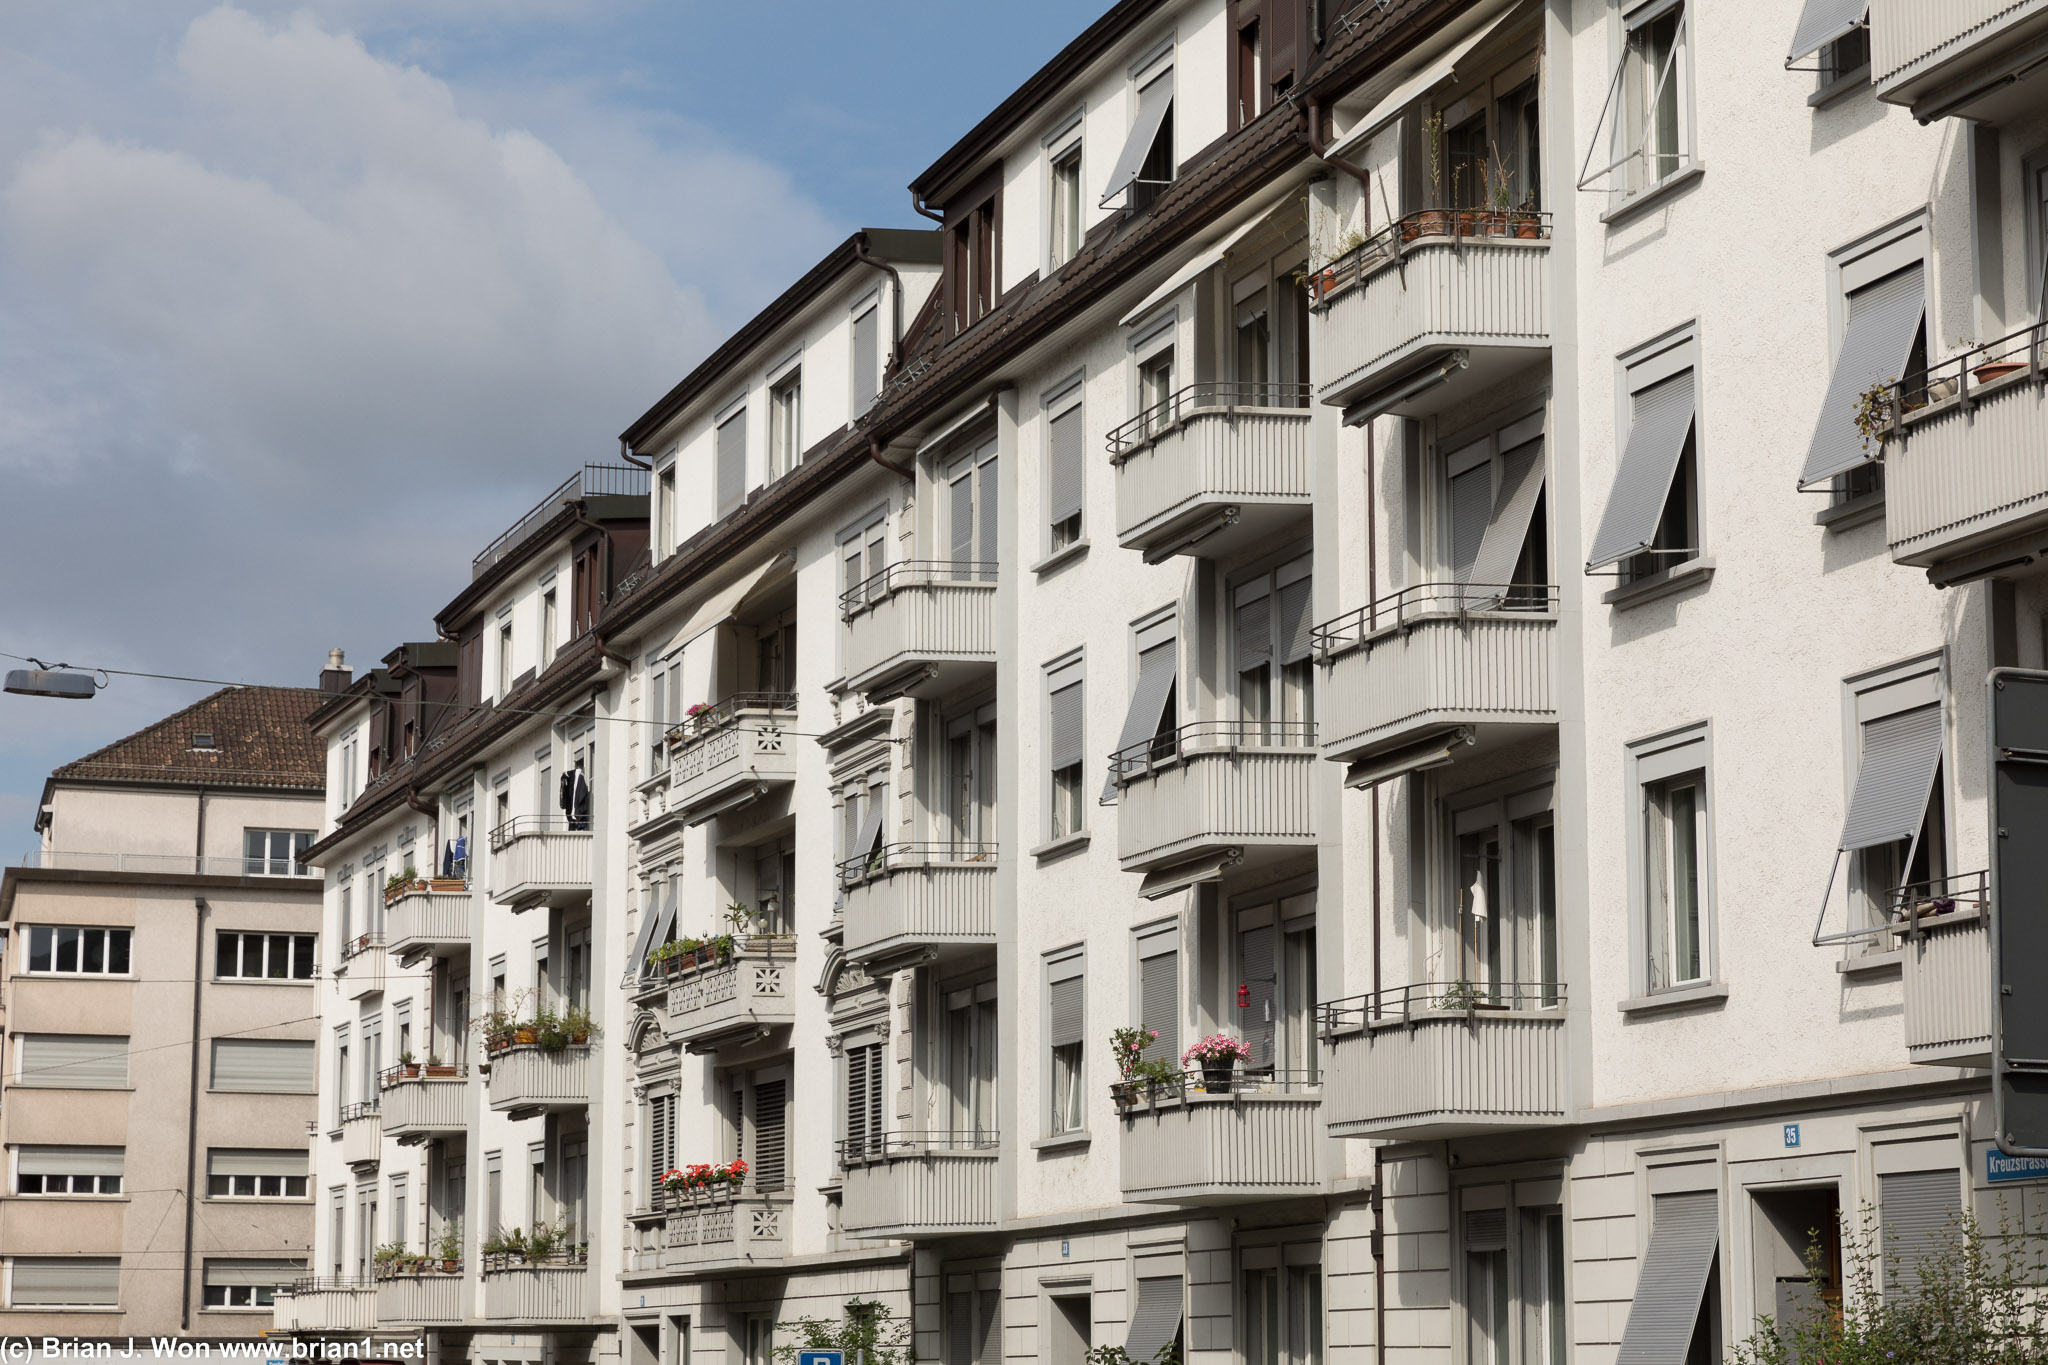 Apartments in Zurich.